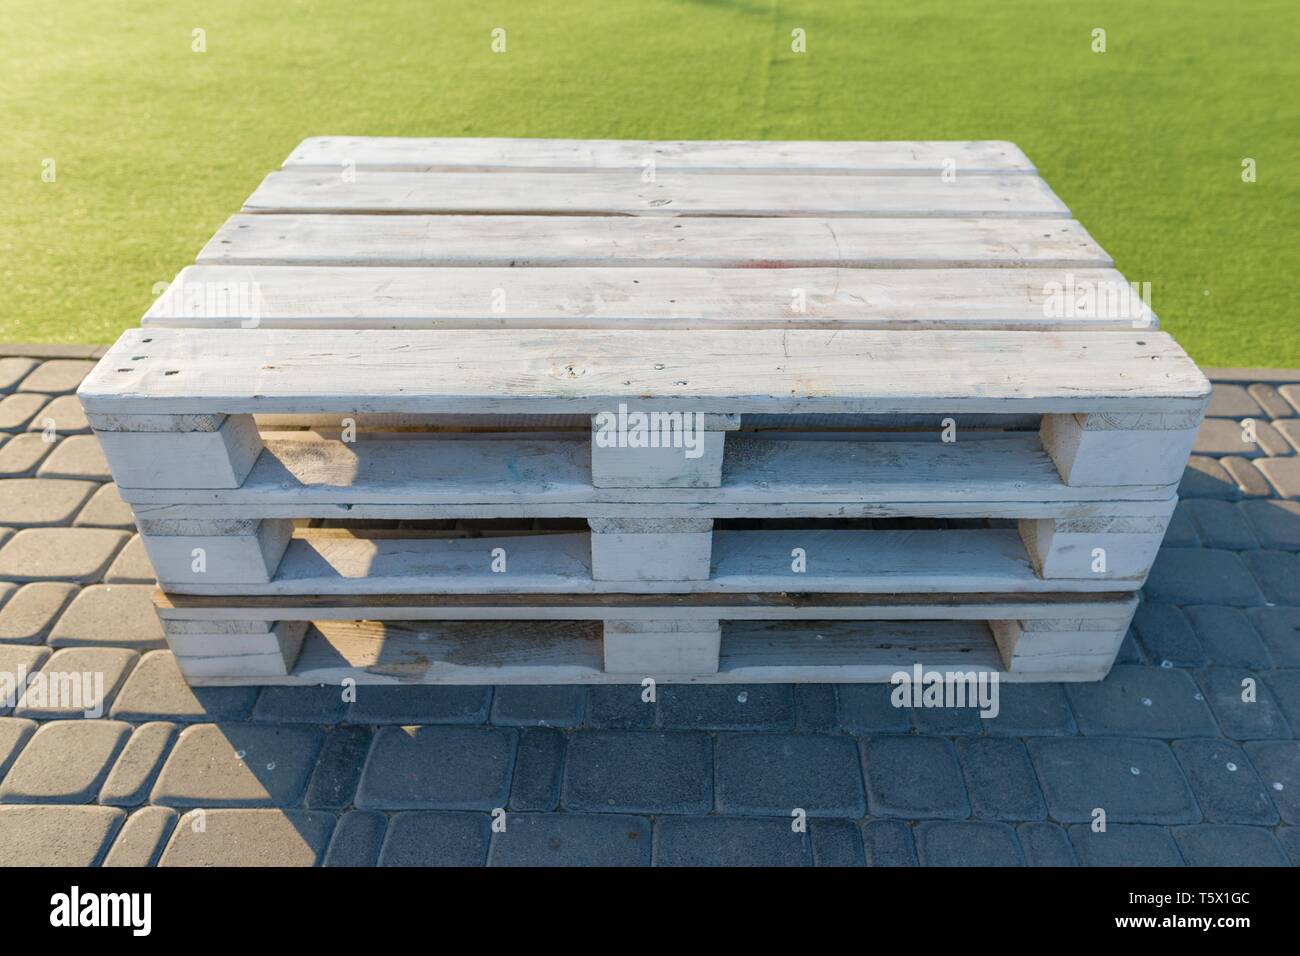 Holz- moderne Gartenmöbel aus Paletten montiert, weiß lackiert in der Erholung und Unterhaltung Zone Stockfoto